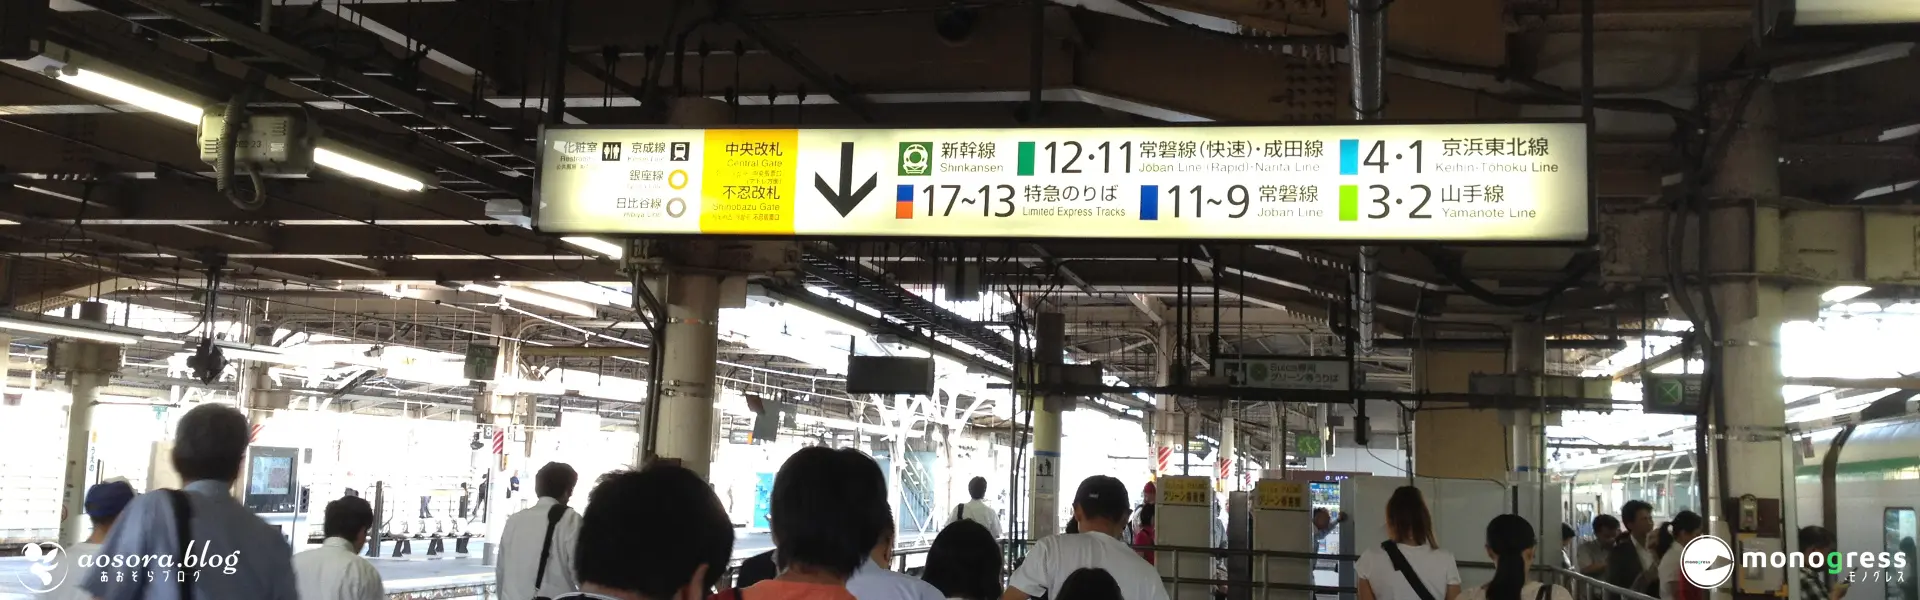 上野駅に到着